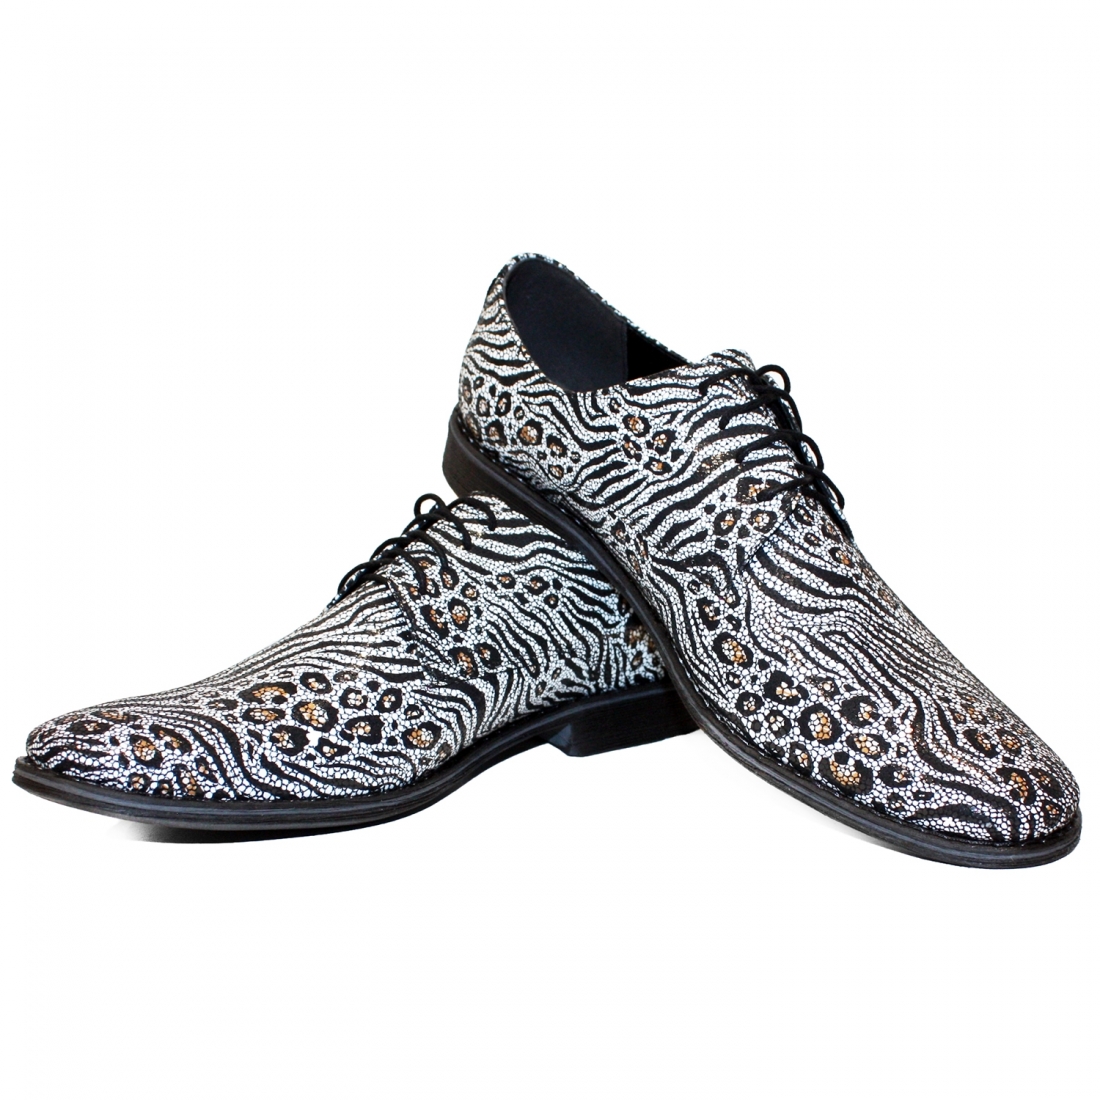 Modello Zeberro - Schnürer - Handmade Colorful Italian Leather Shoes